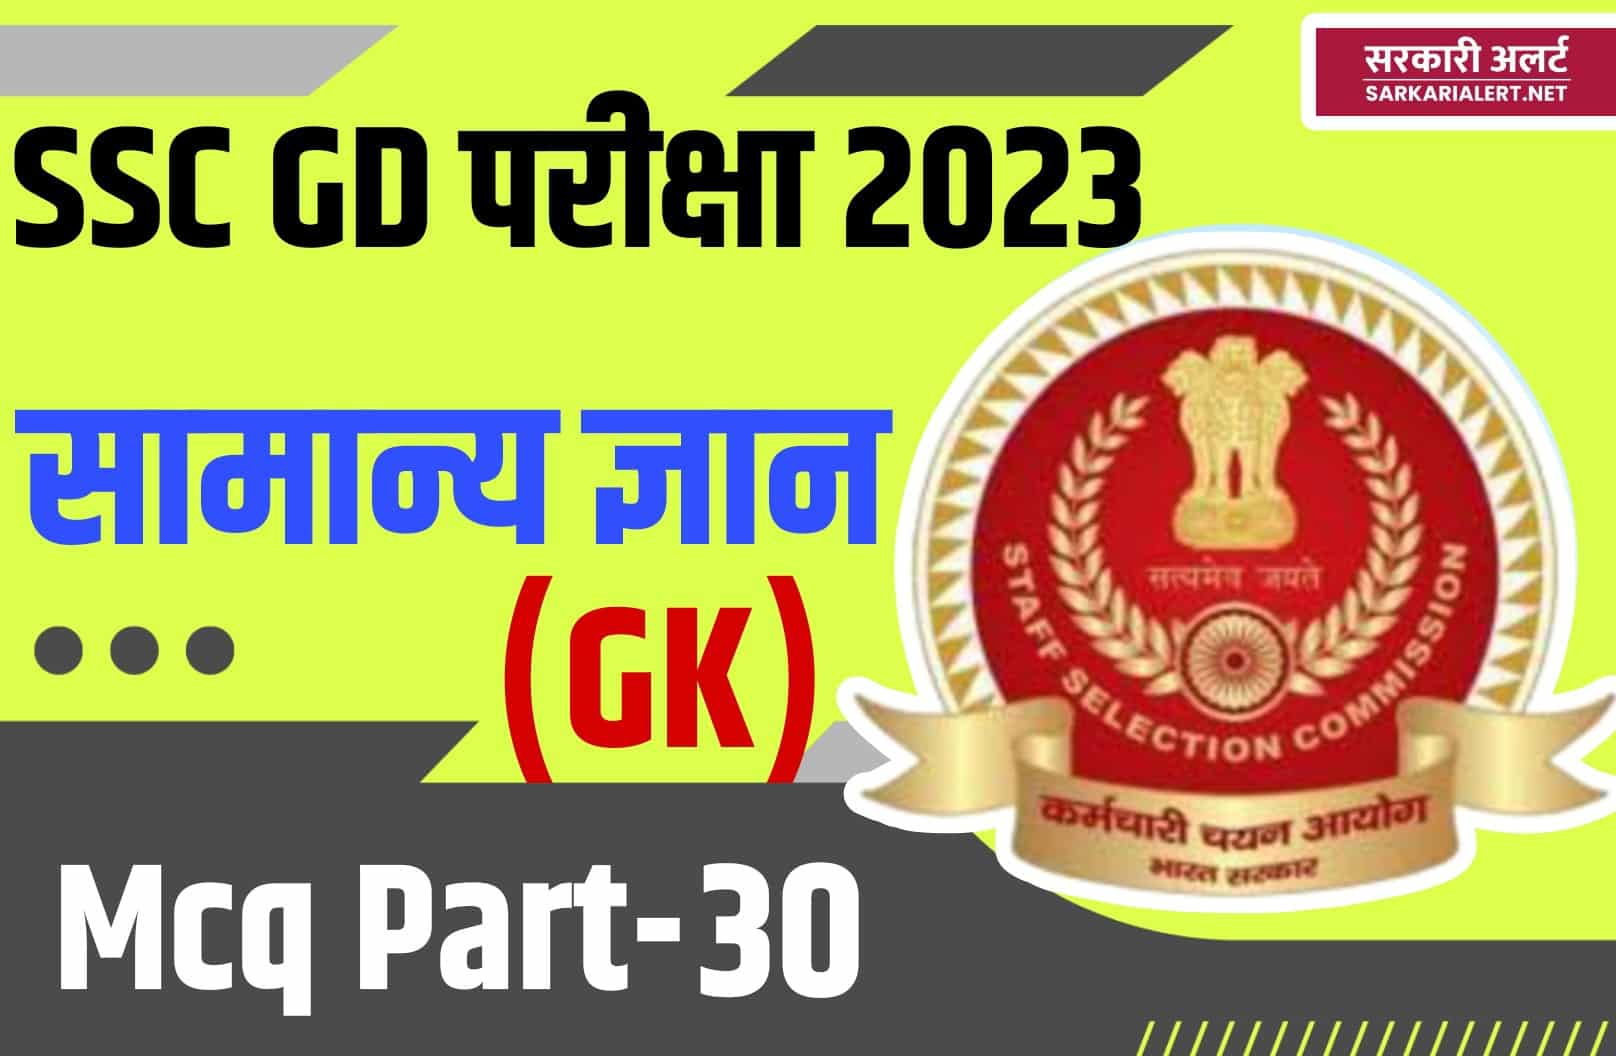 SSC GD Exam 2023 GK MCQ – 30 | सामान्य ज्ञान के 25 प्रश्न और उत्तर